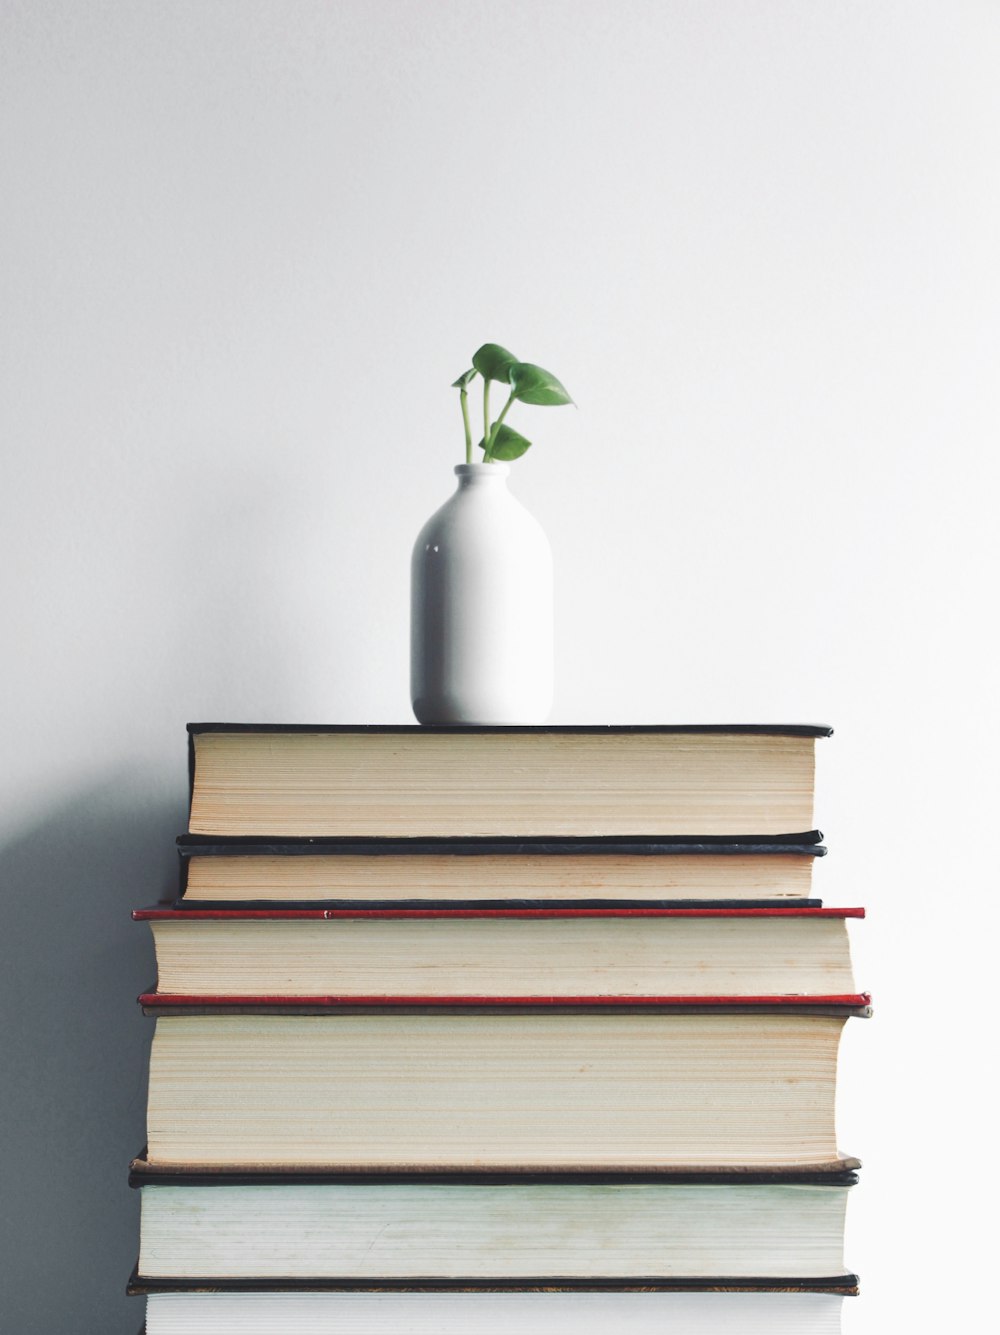 weiße Keramikvase mit grüner Pflanze auf Büchern